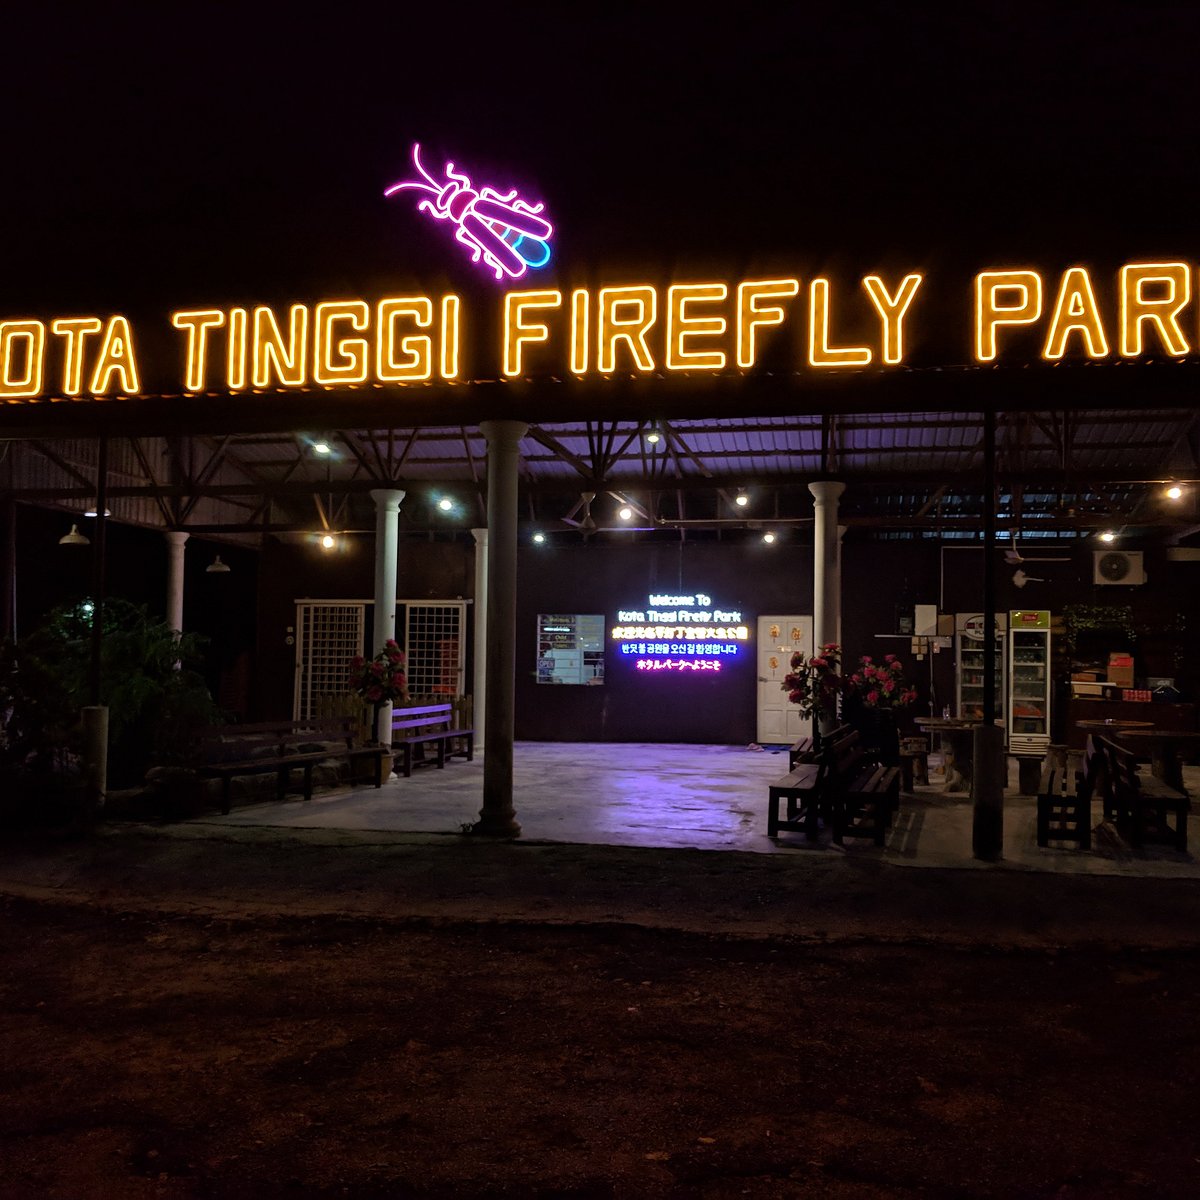 KOTA TINGGI FIREFLY PARK (Johor Bahru) - 2022 Qué saber antes de ir